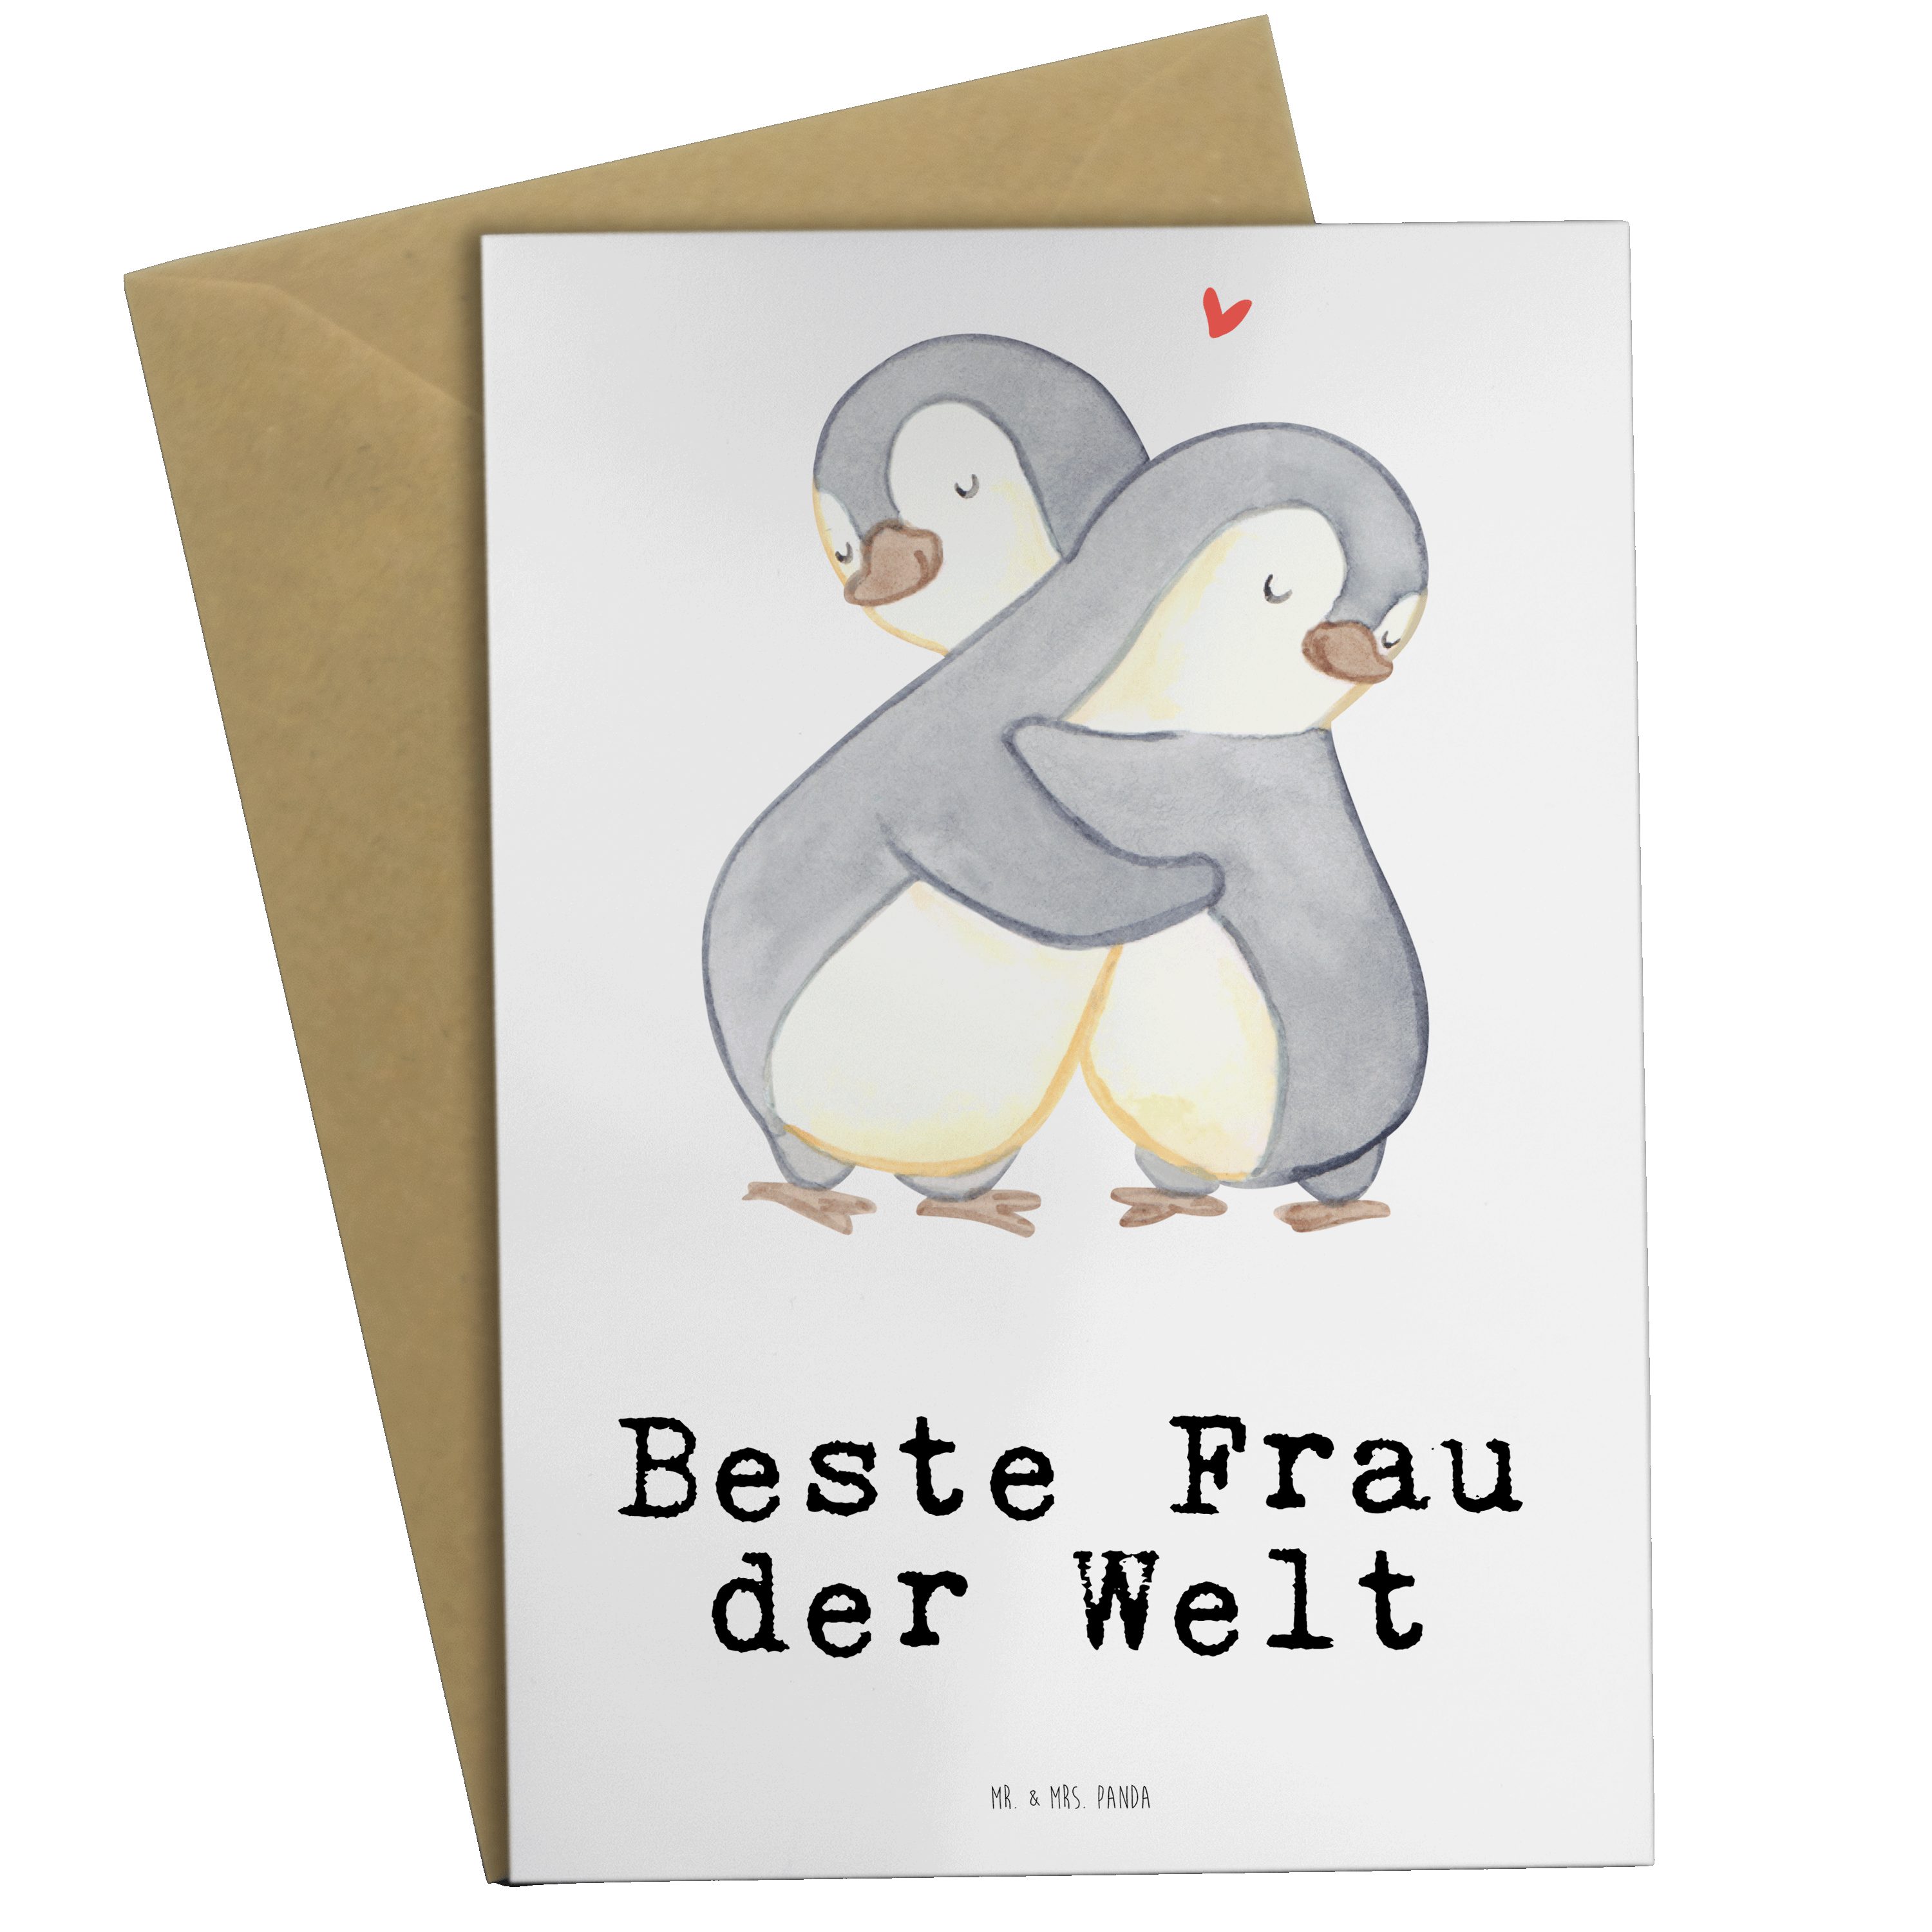 Mr. & Mrs. Panda Grußkarte Pinguin Beste Frau der Welt - Weiß - Geschenk, Freude machen, Braut